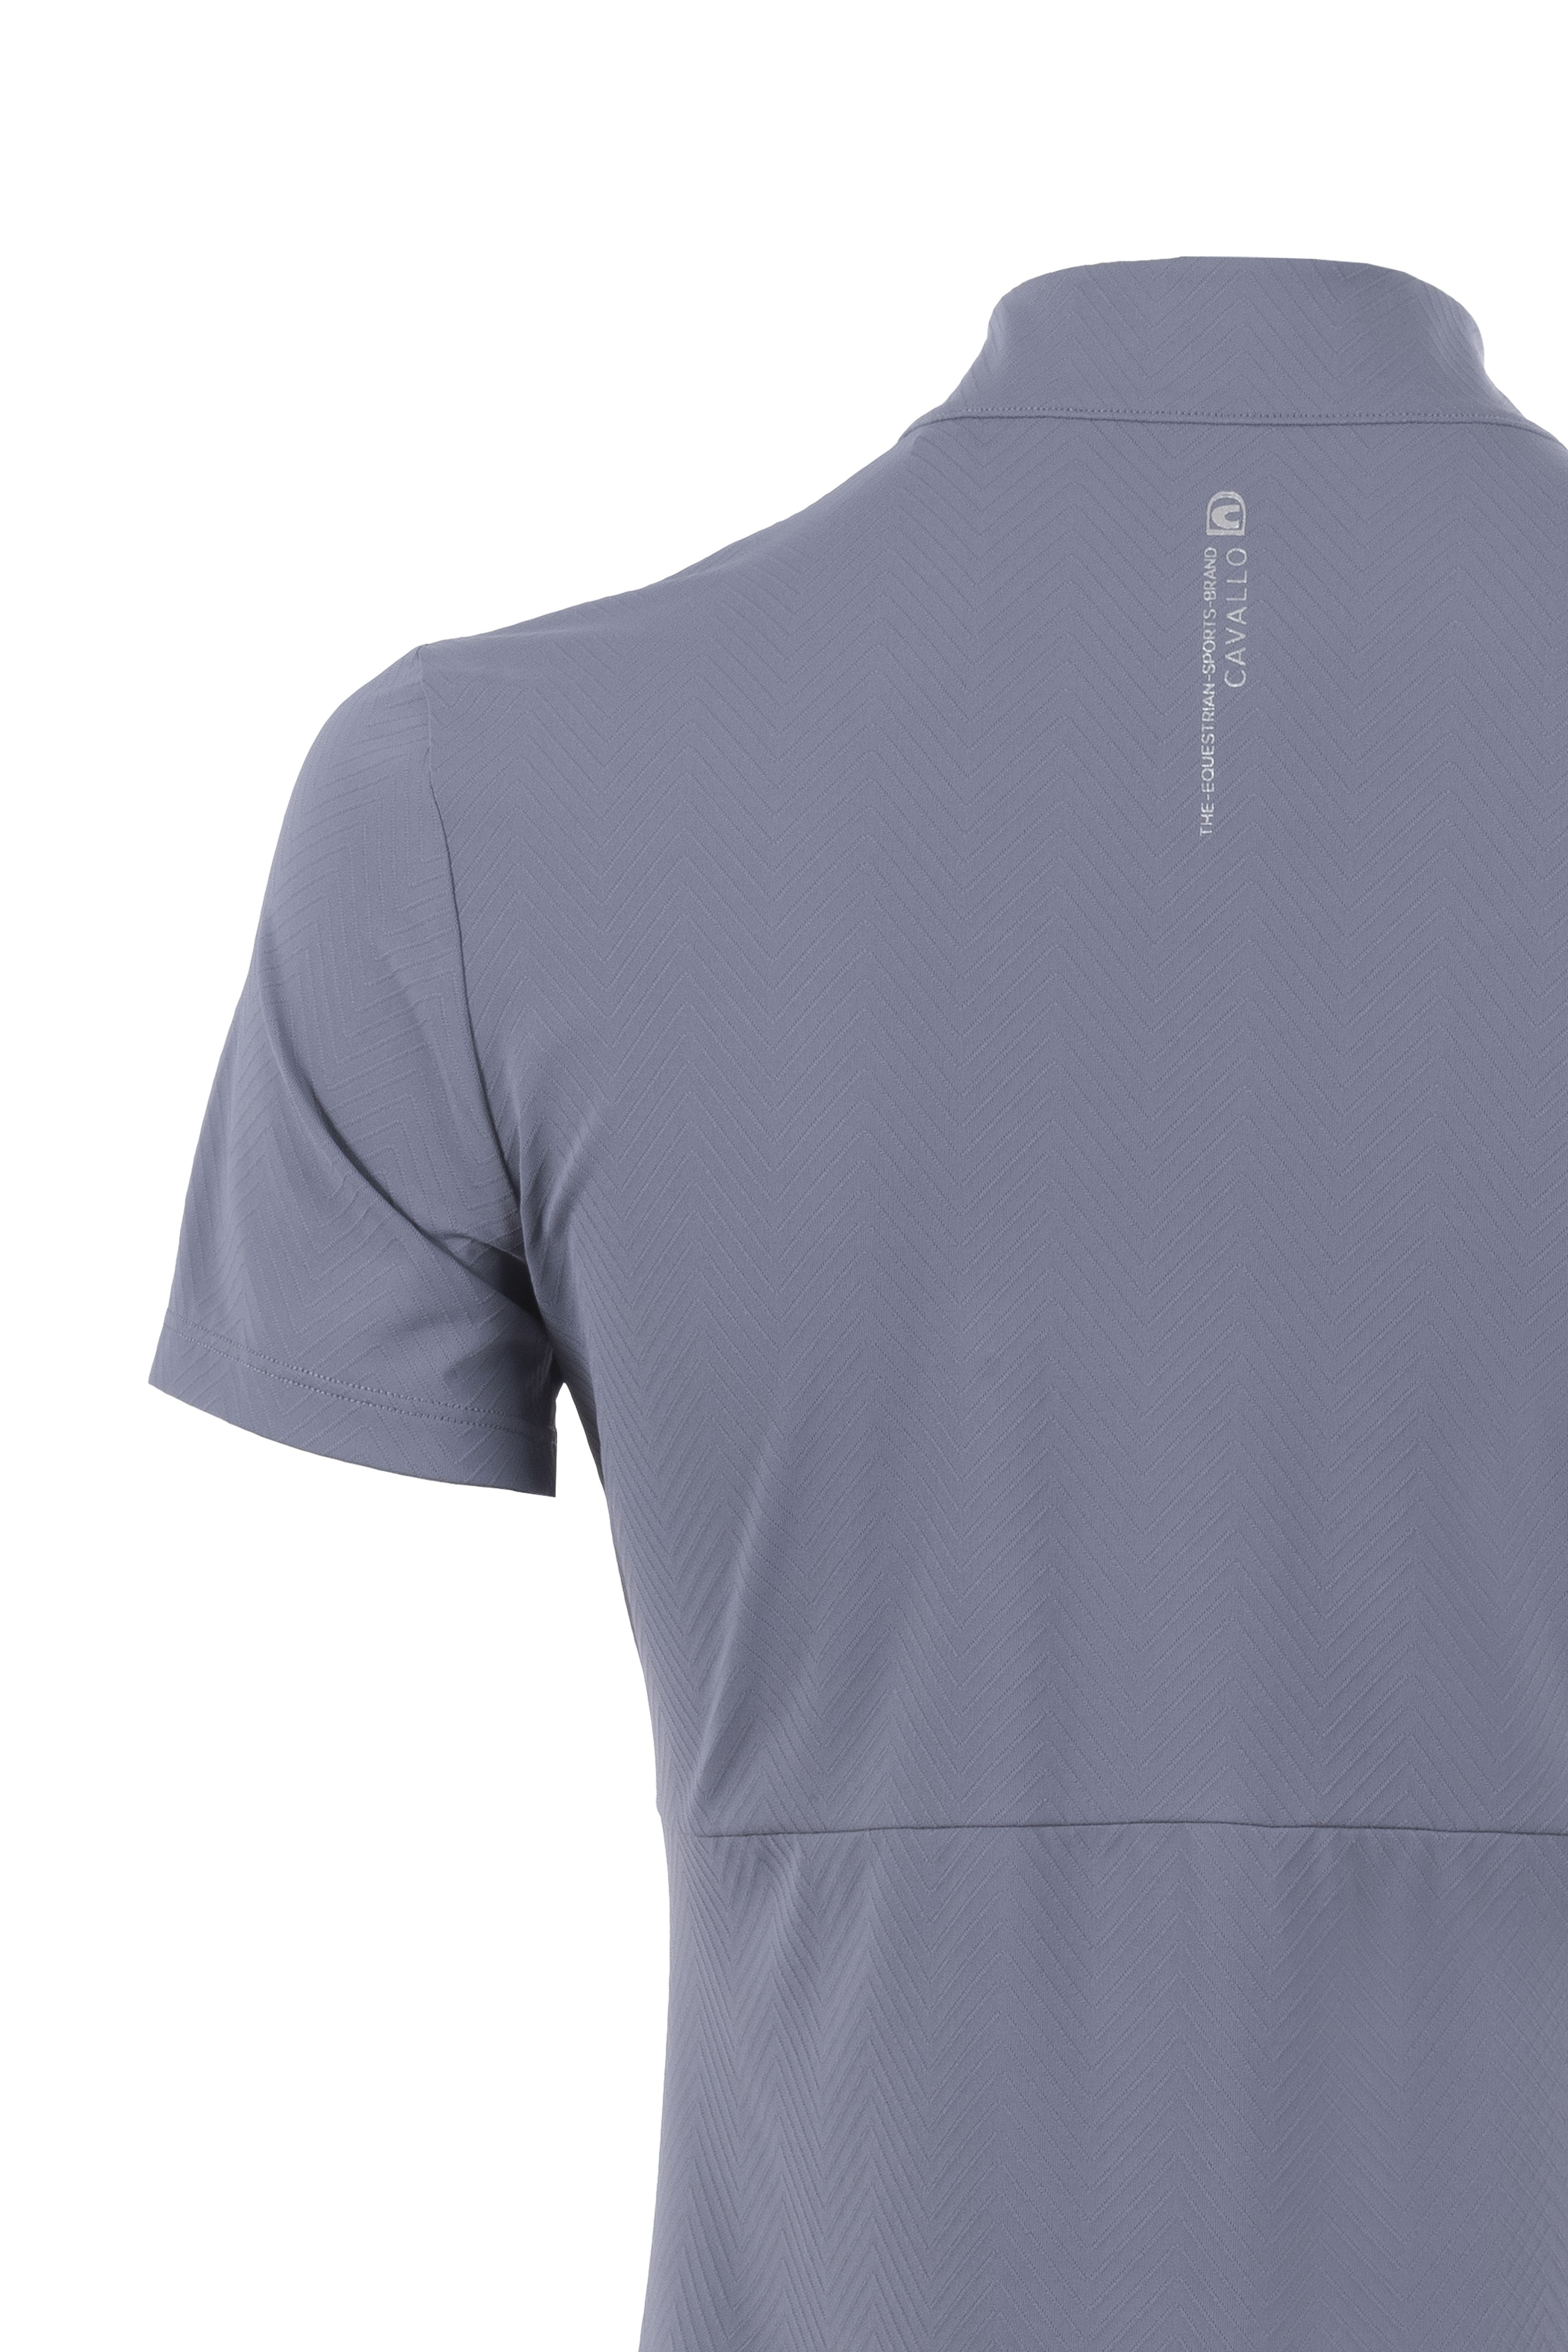 Shirt CAVAL TRAINING SHIRT - Reitstiefel Kandel - Dein Reitshop